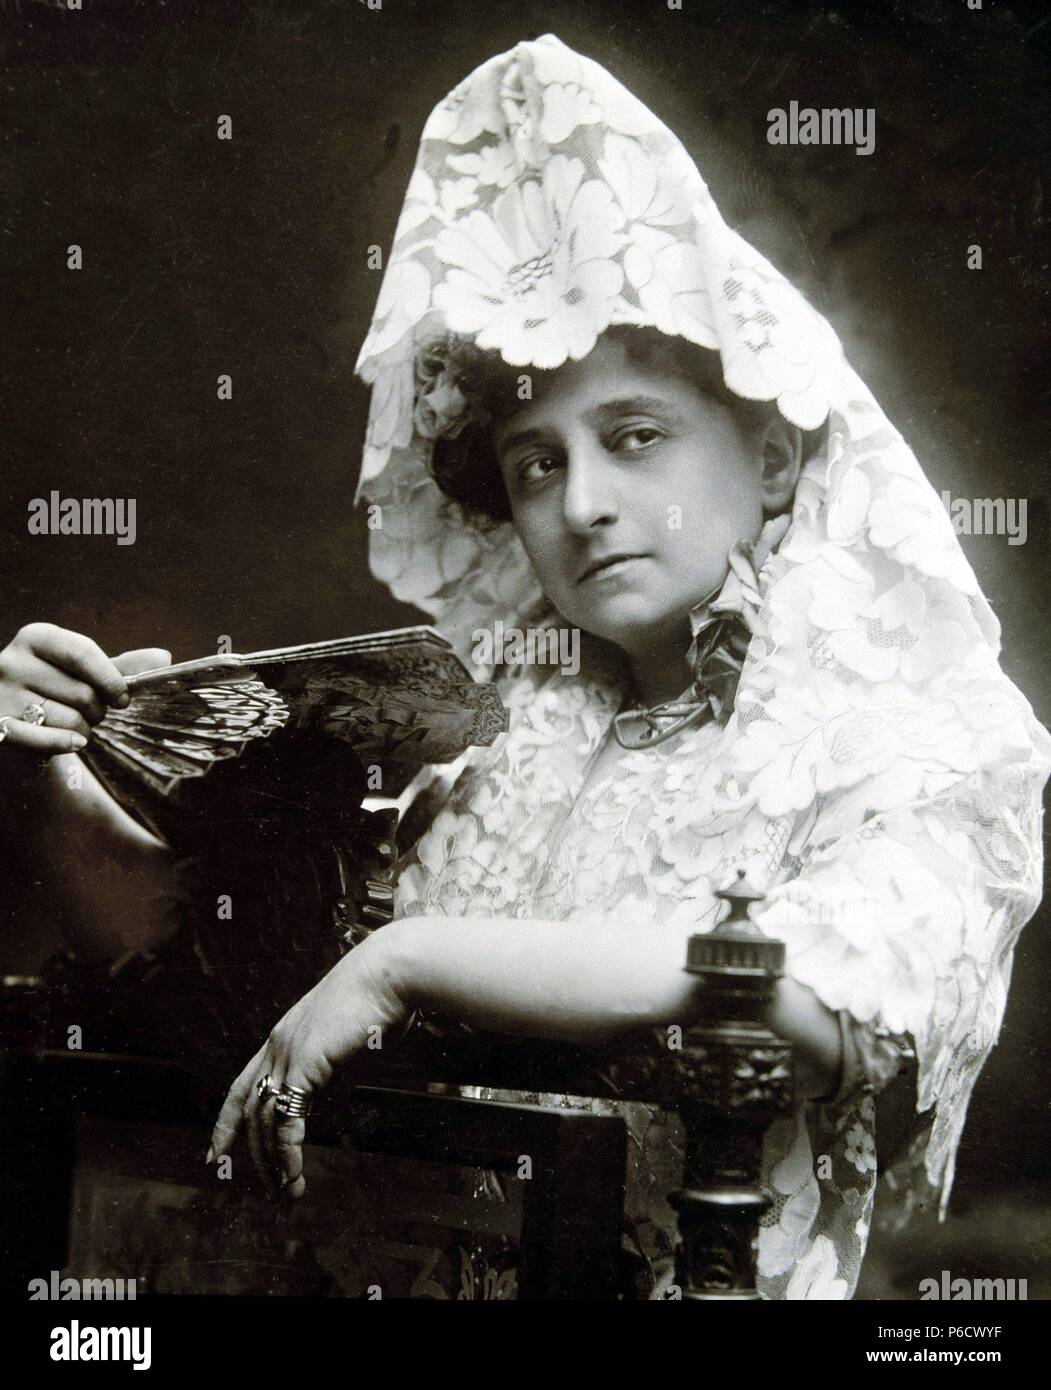 GUERRERO , MARIA. ACTRIZ DE TEATRO ESPAÑOLA. MADRID 1867 - 1928. FOTO PROMOCIONAL. Stock Photo